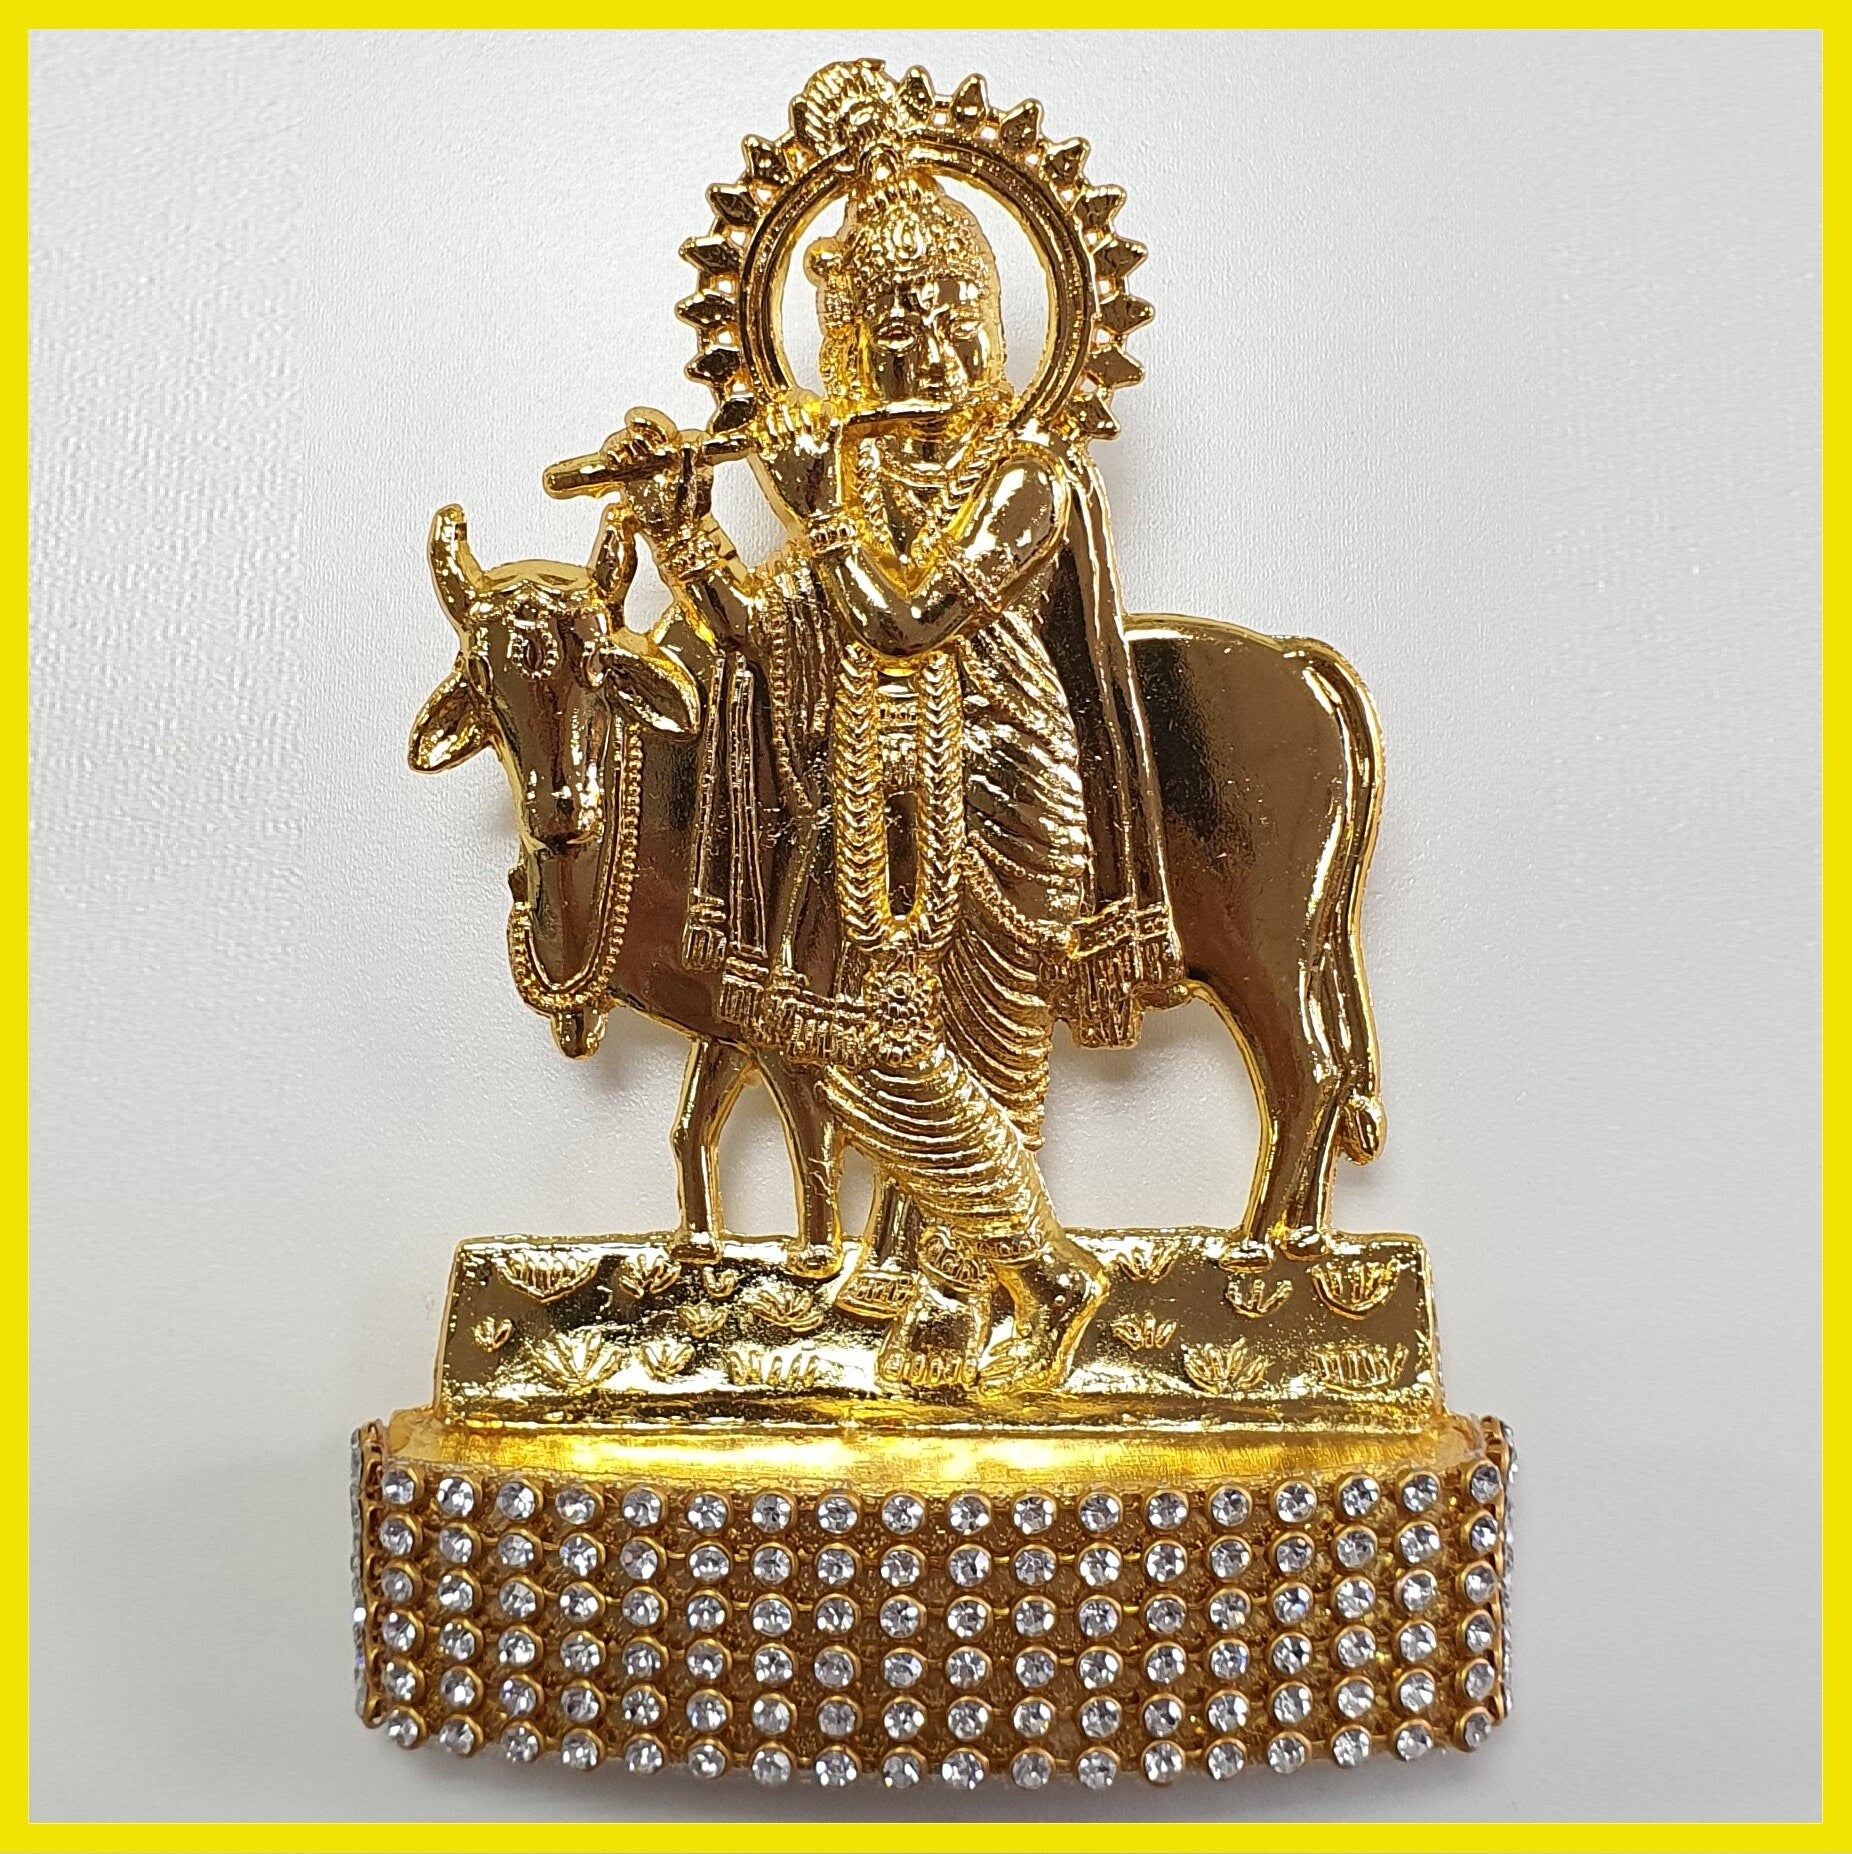 Lord Krishna statue